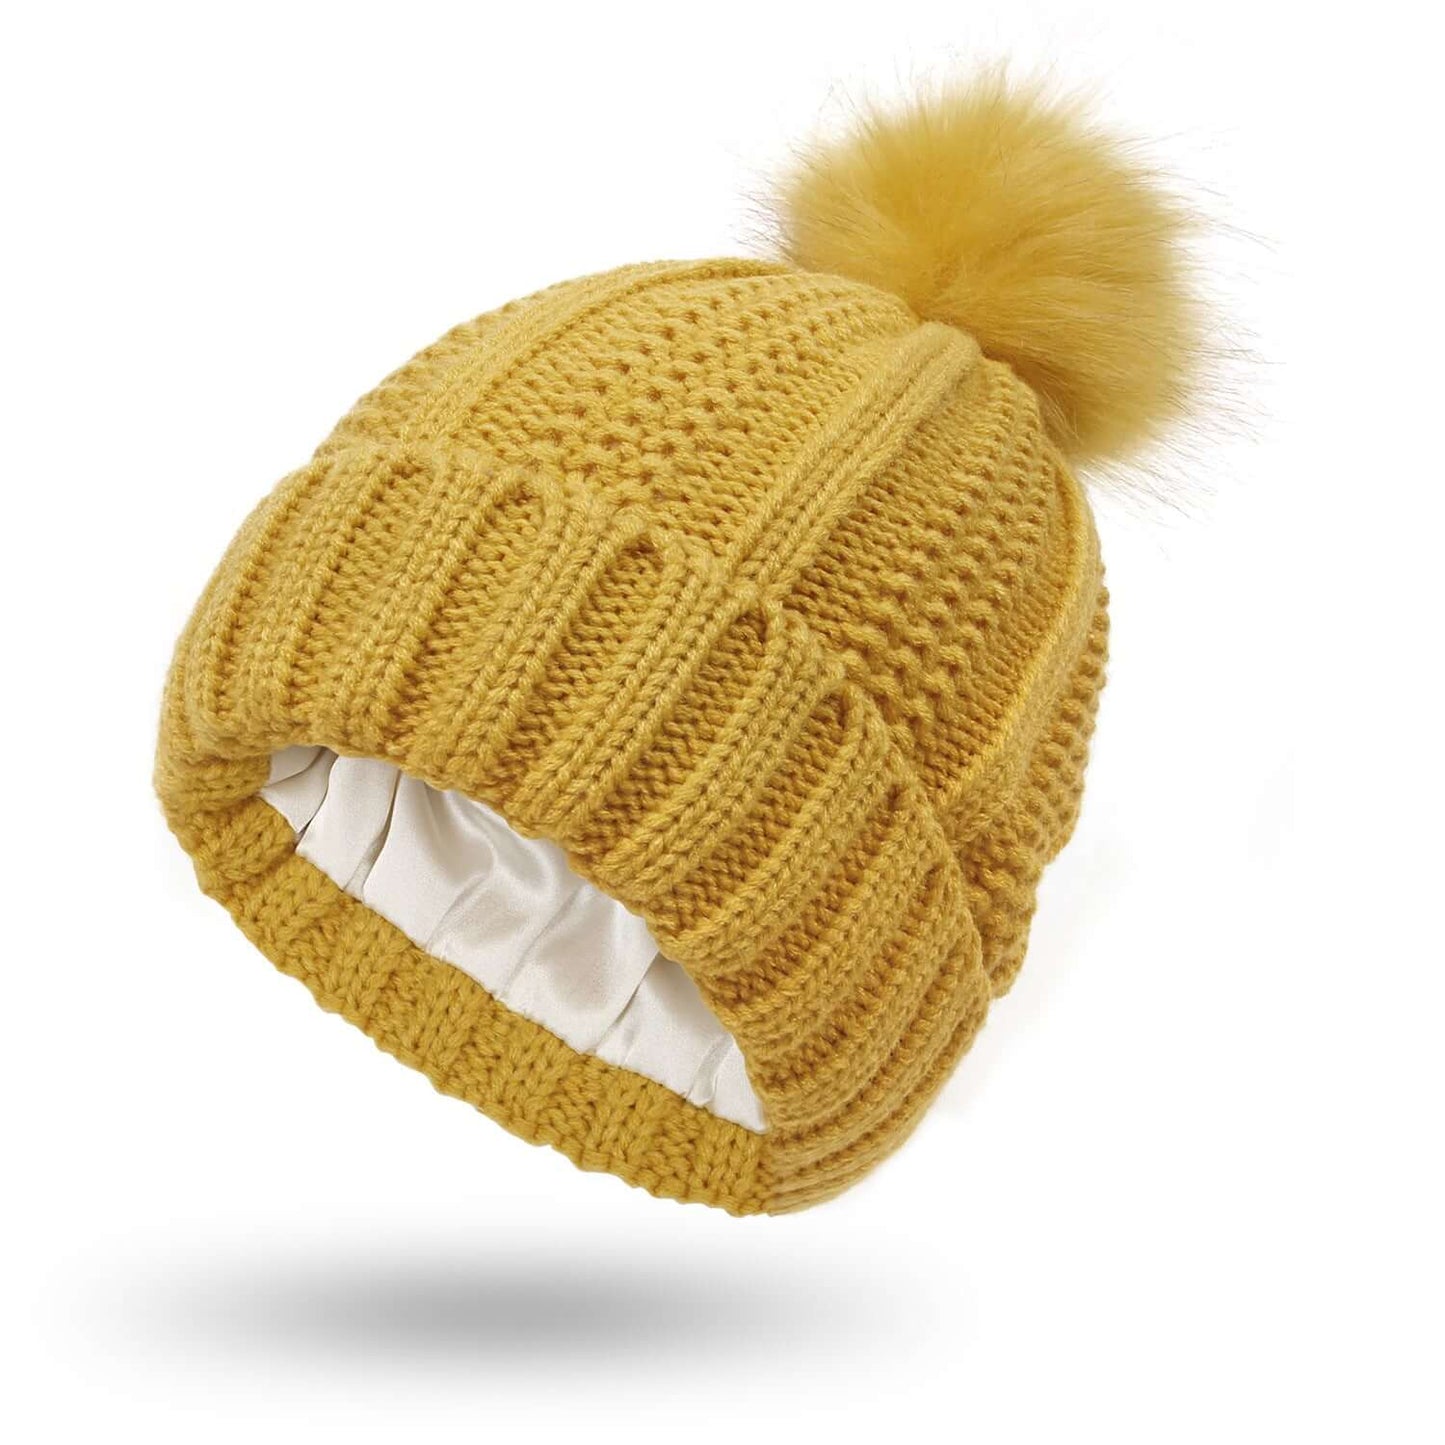 Stretchy Satin Lined Skull Knit Beanie Hat with Faux Fur Pom-Pom